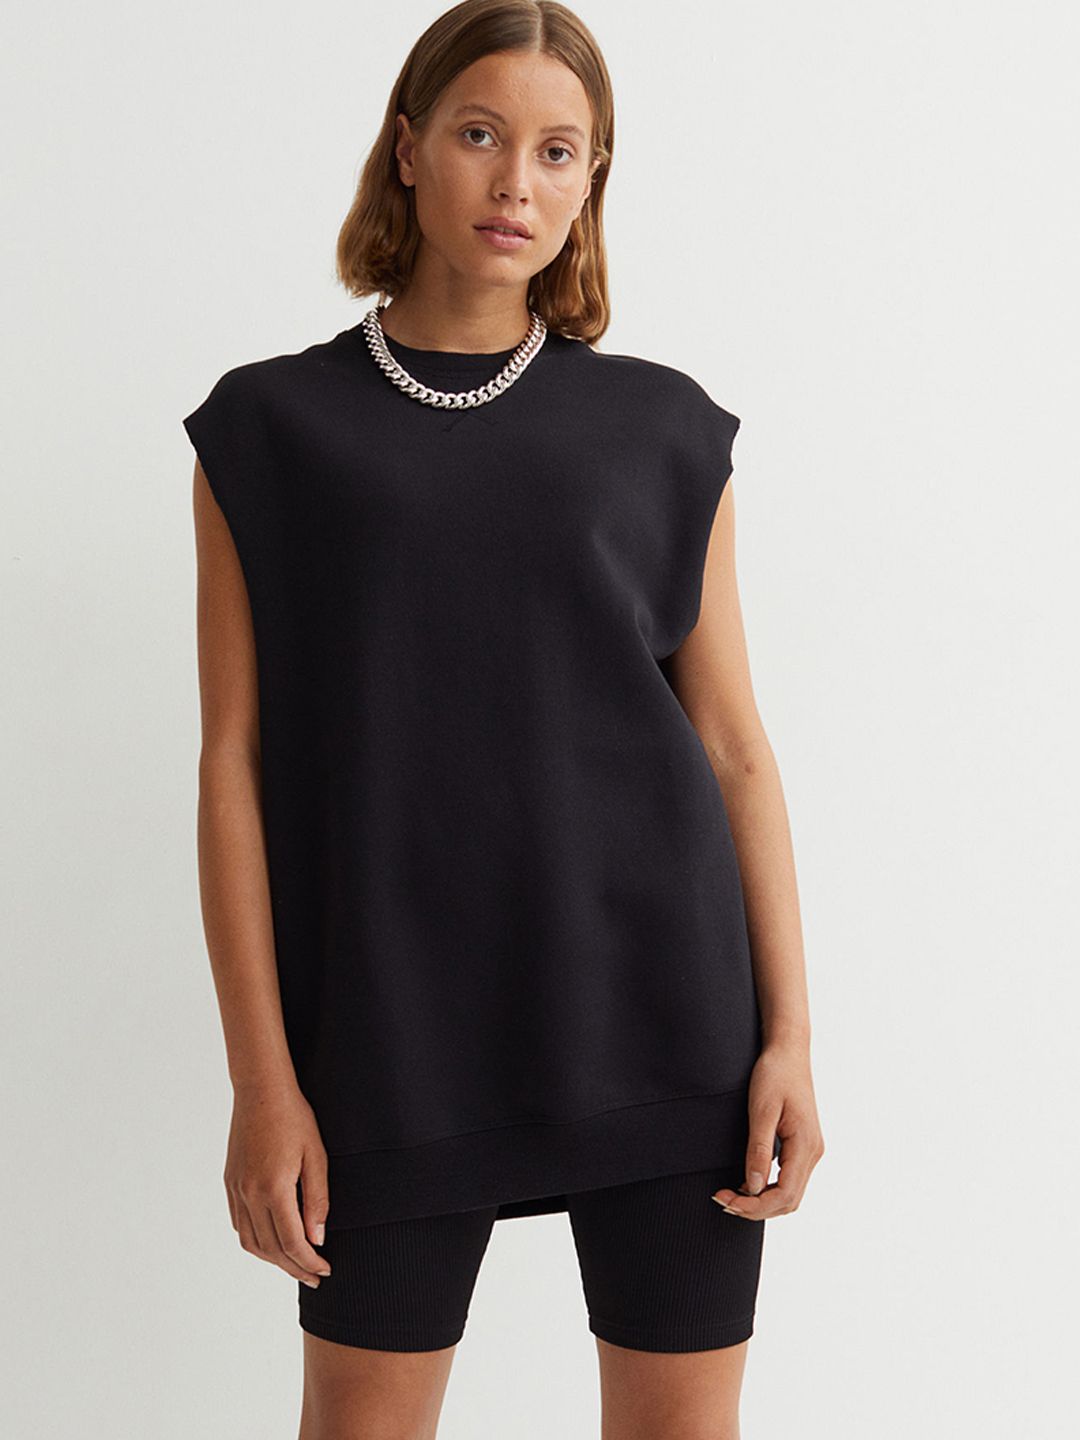 H&M Women Black Sleeveless Sweatshirt Price in India